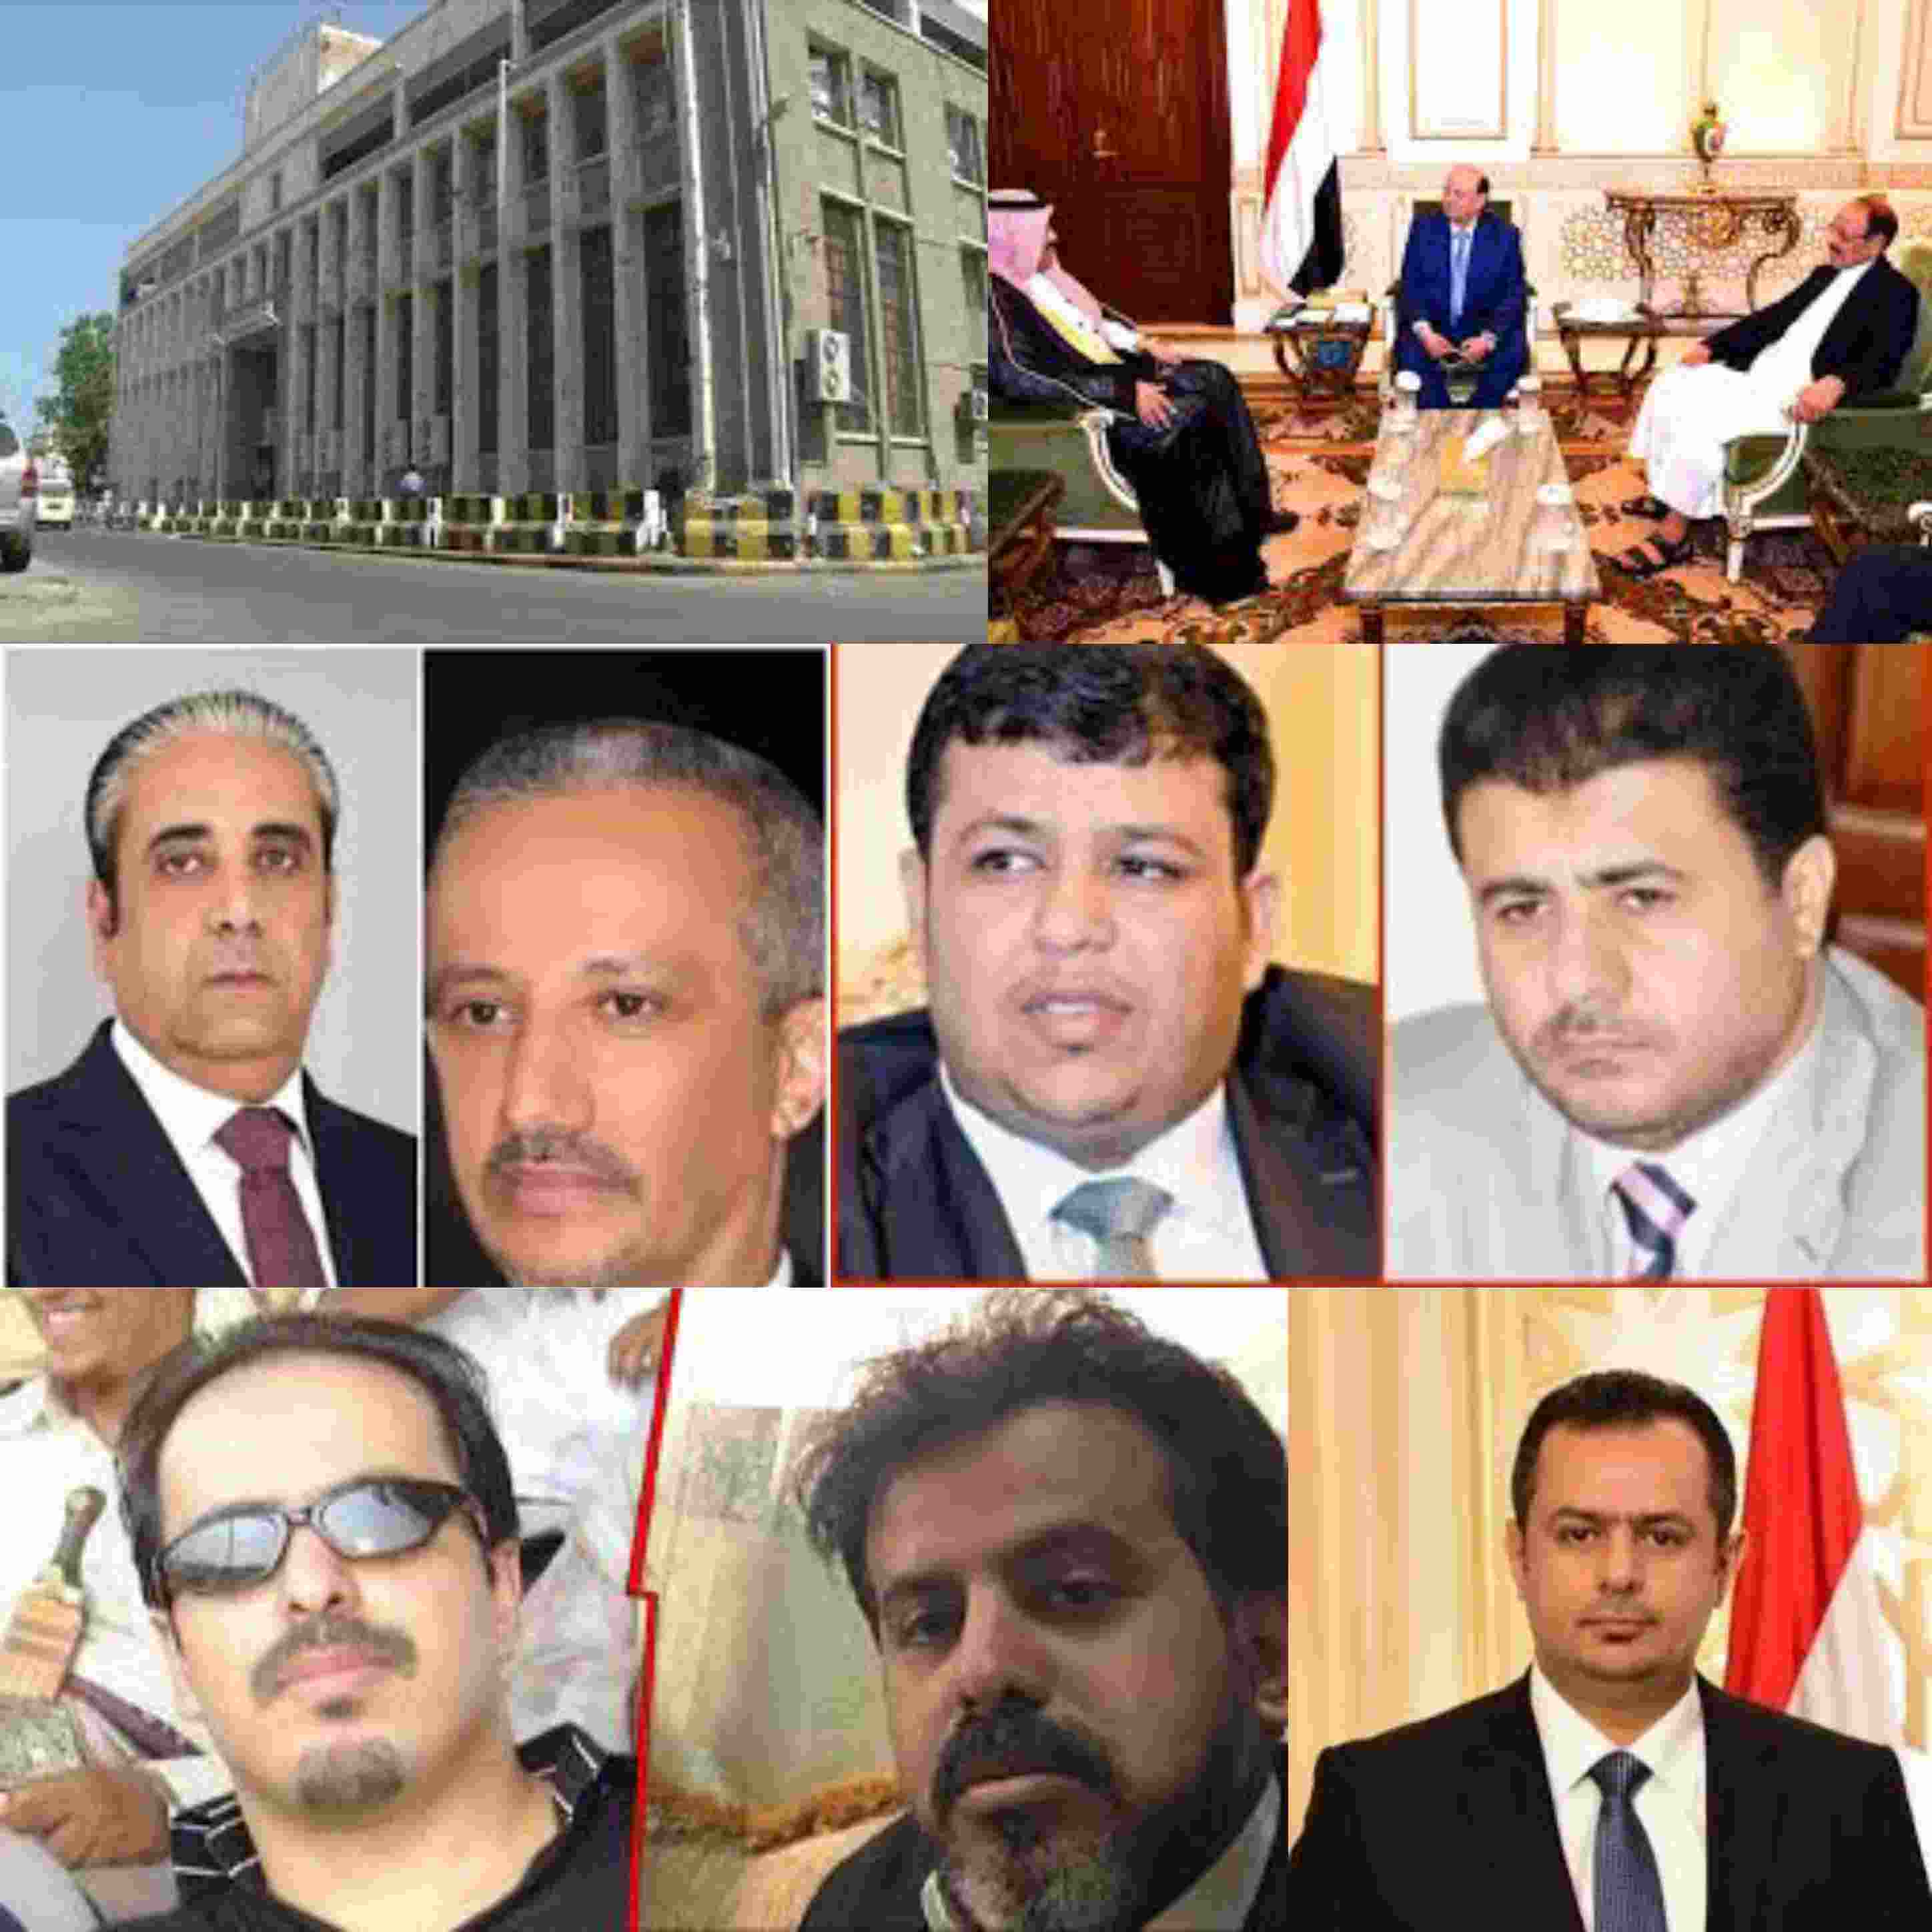 لجنة سعودية ترفض تقديم وديعة جديدة للمركزي اليمني وتكشف تورط الرئيس هادي ونائبه الاحمر والسفير آل جابر بعمليات فساد